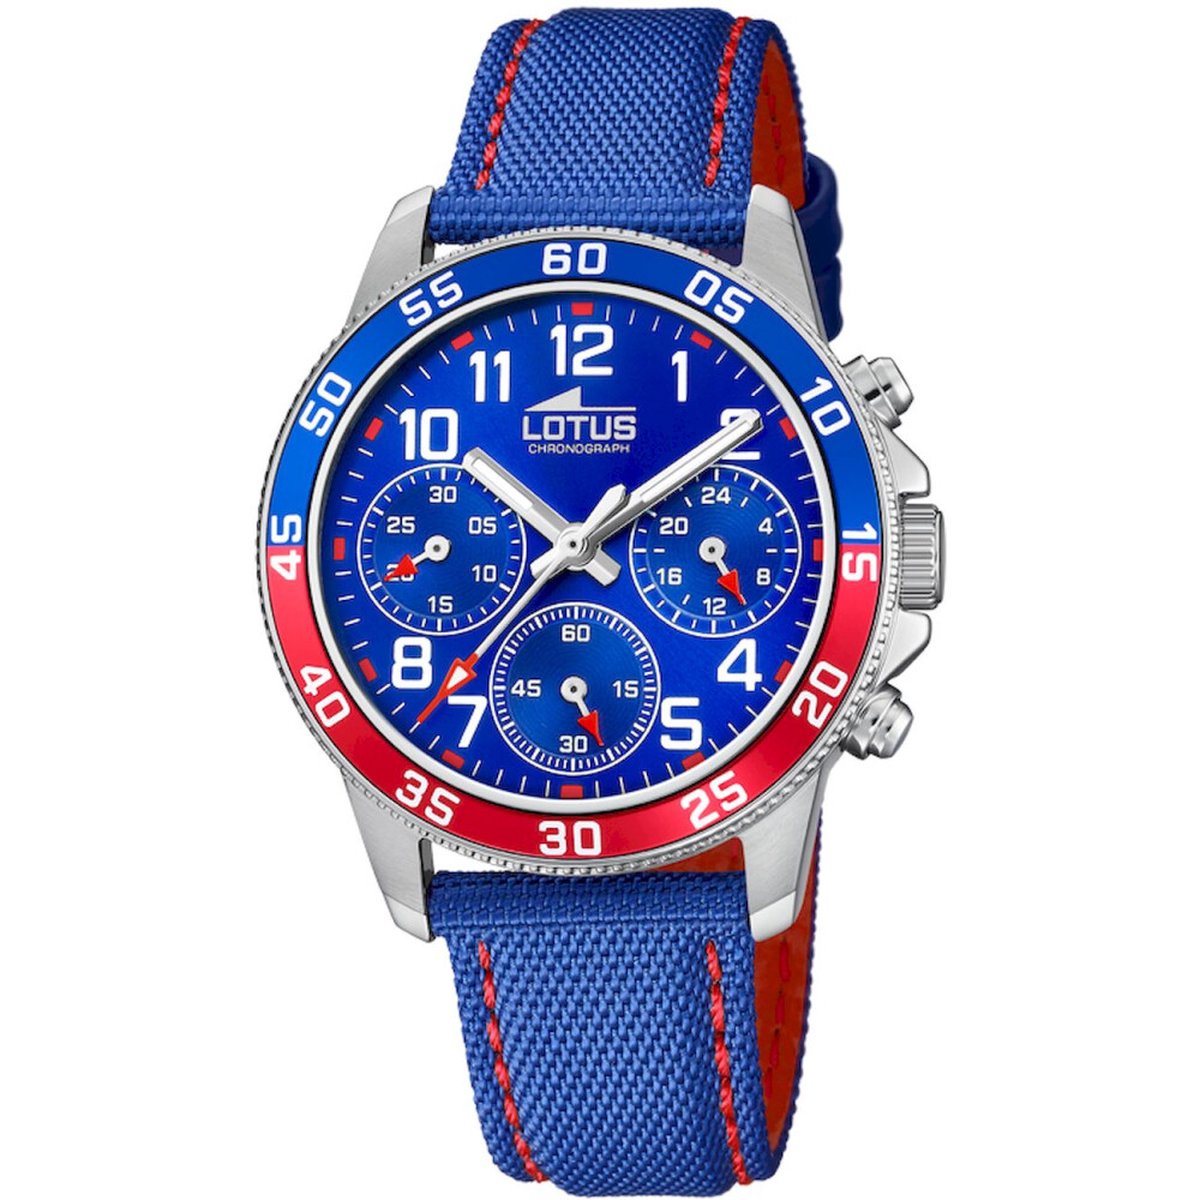 Lotus Junior Horloge - Lotus mensen horloge - Blauw - diameter 36 mm - roestvrij staal